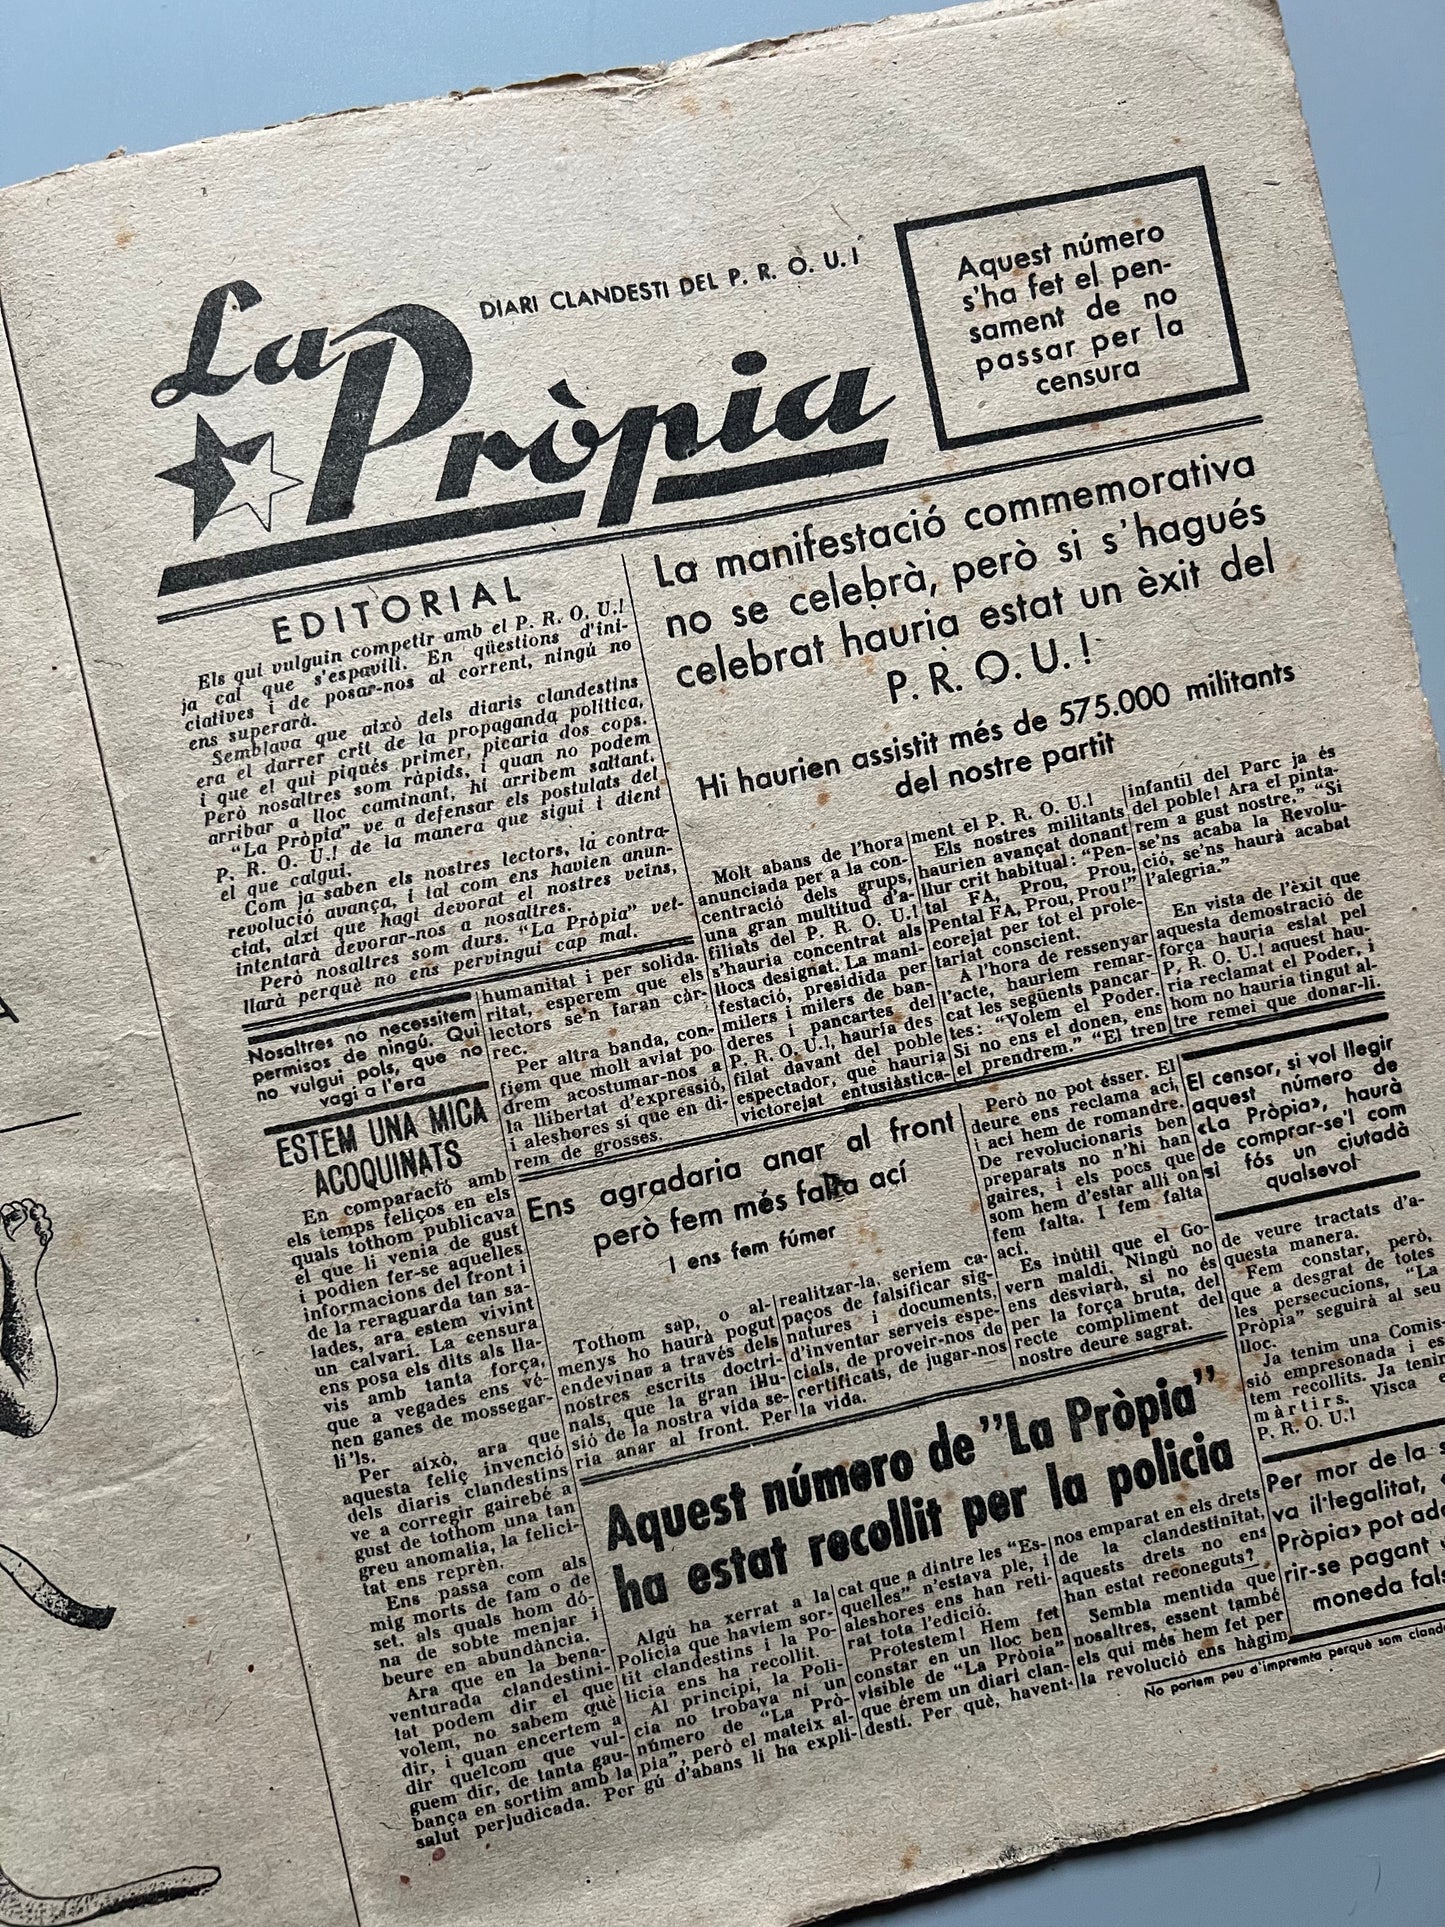 L'Esquella de la Torratxa, nº3022 - Barcelona, 23 julio 1937